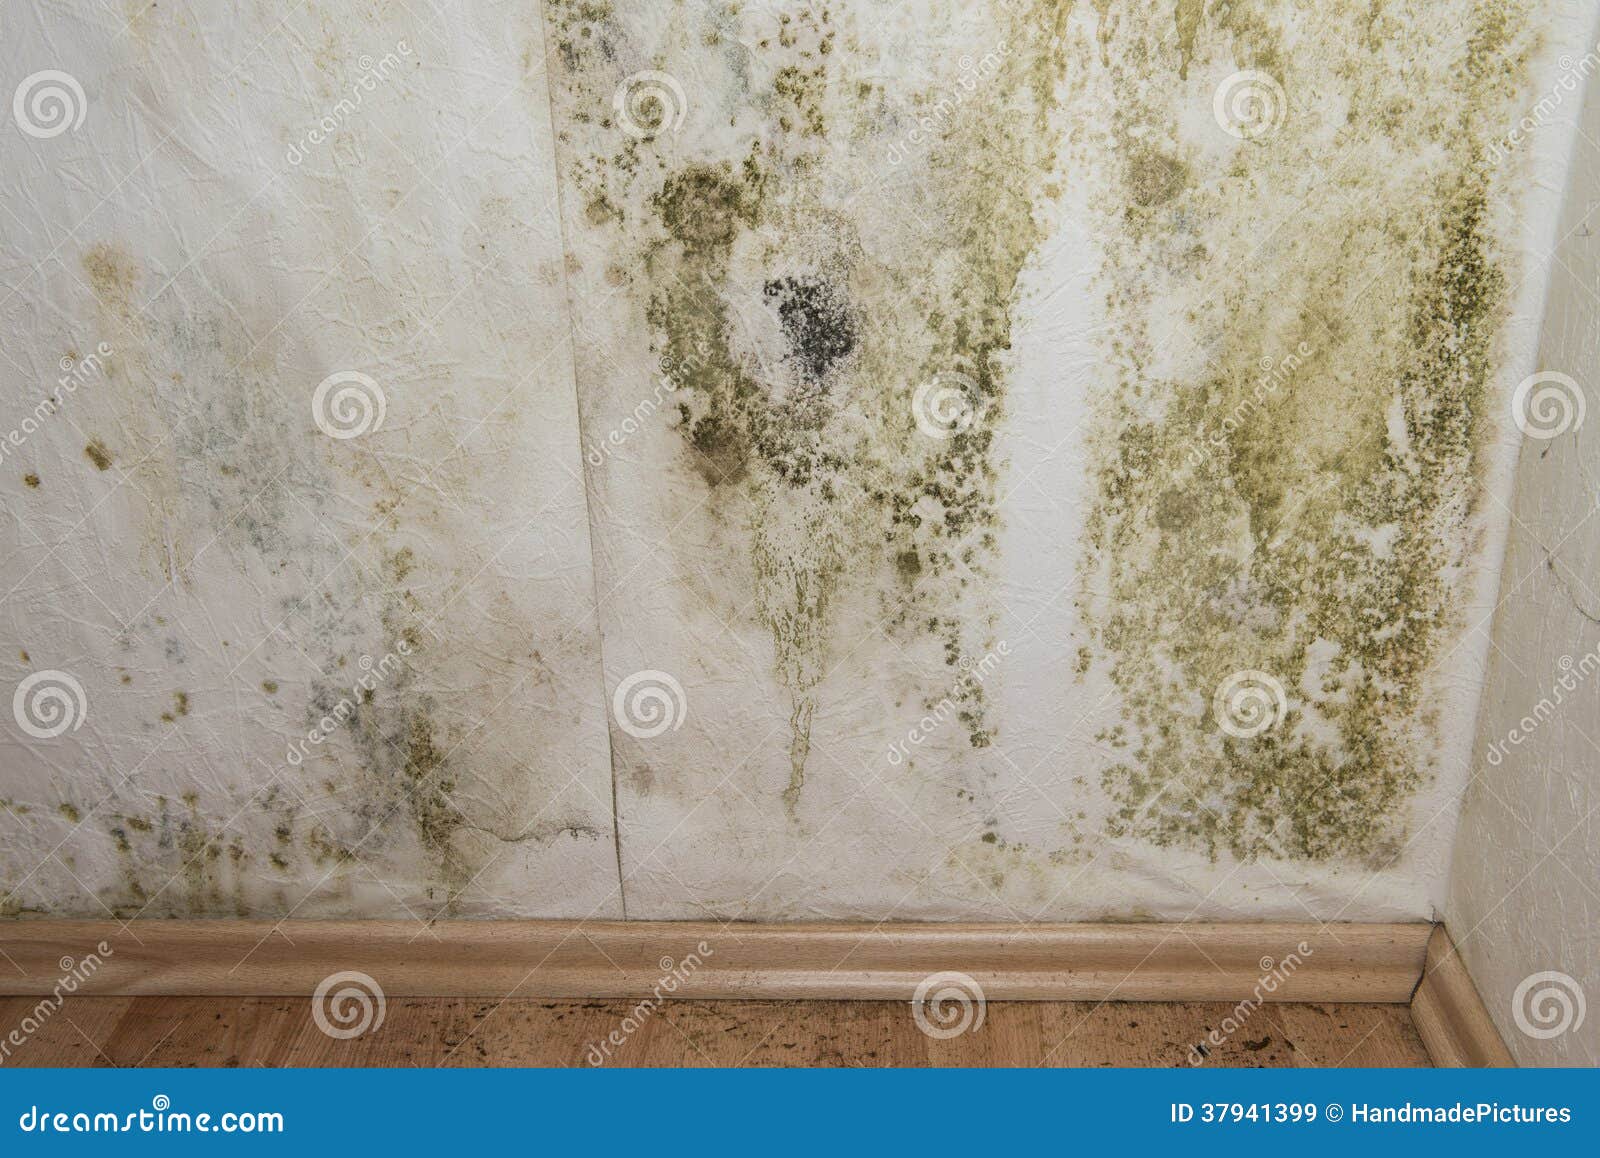 mildewed walls